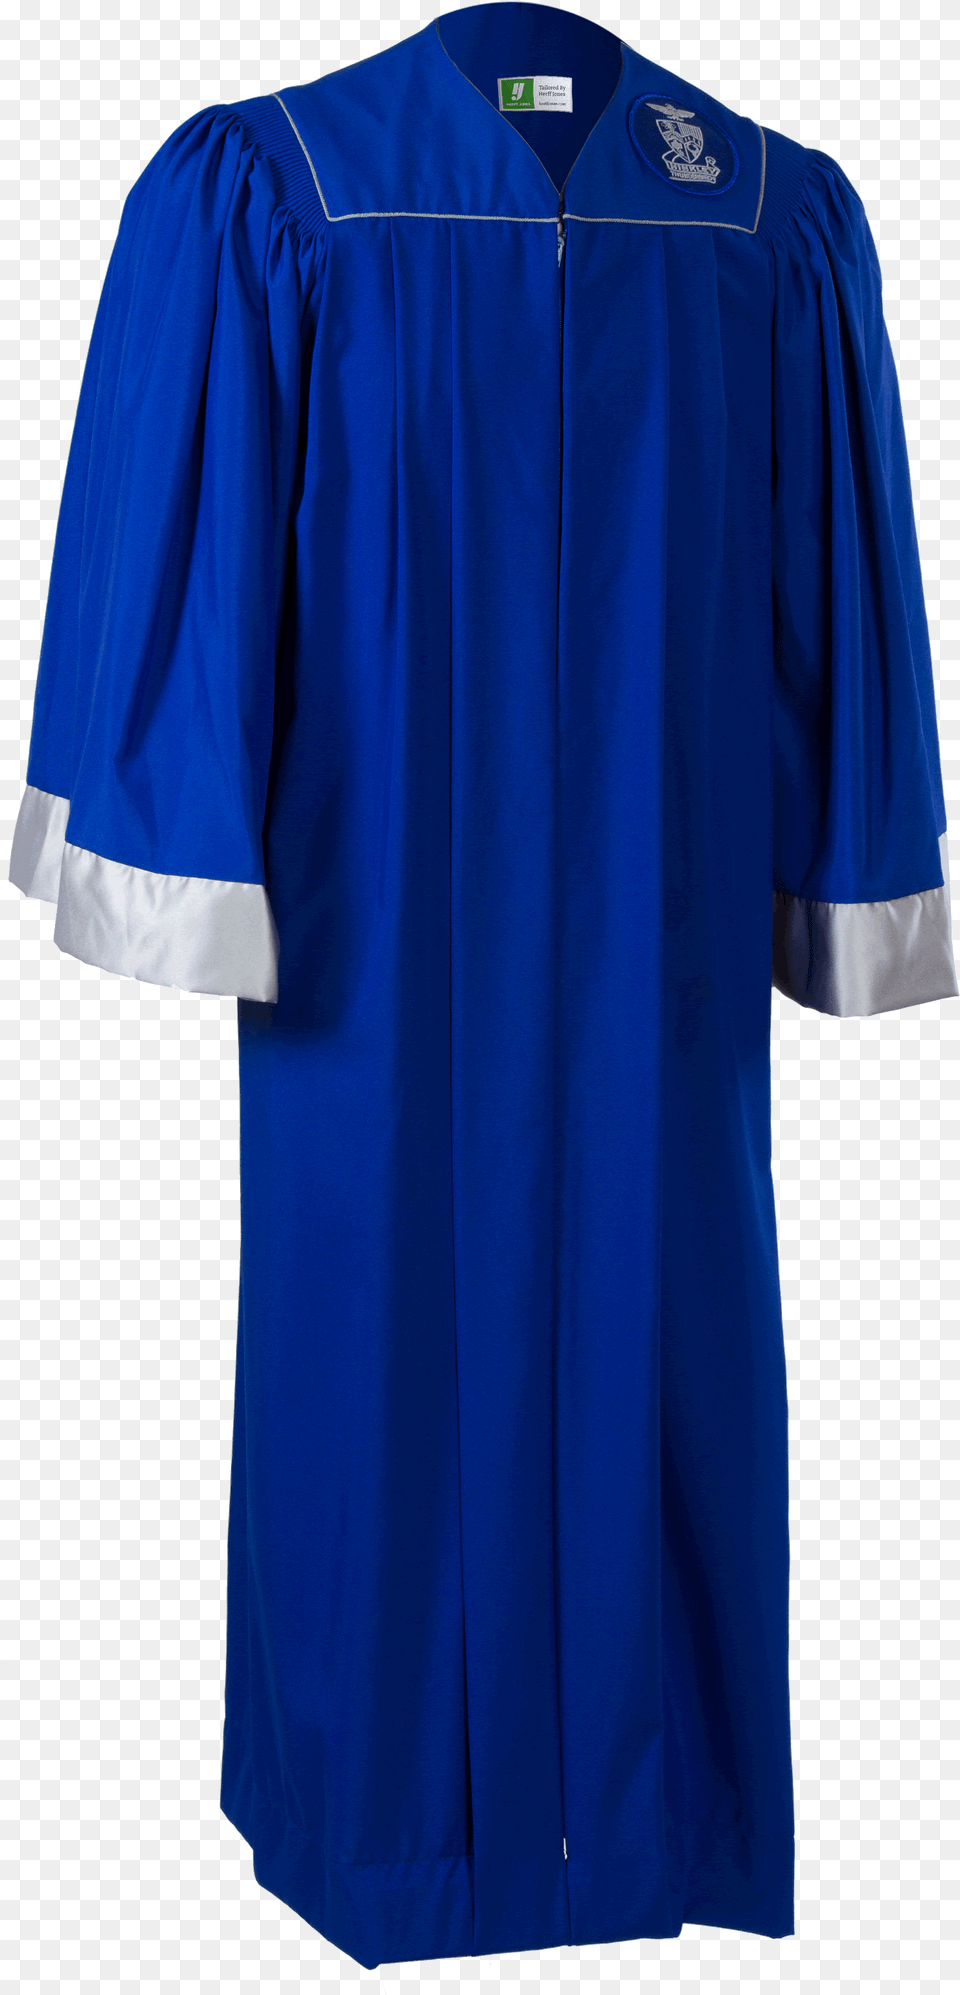 Hinkley Custom Rental Gown Cap Amp Tassel School, Clothing, Shirt, Coat, People Png Image